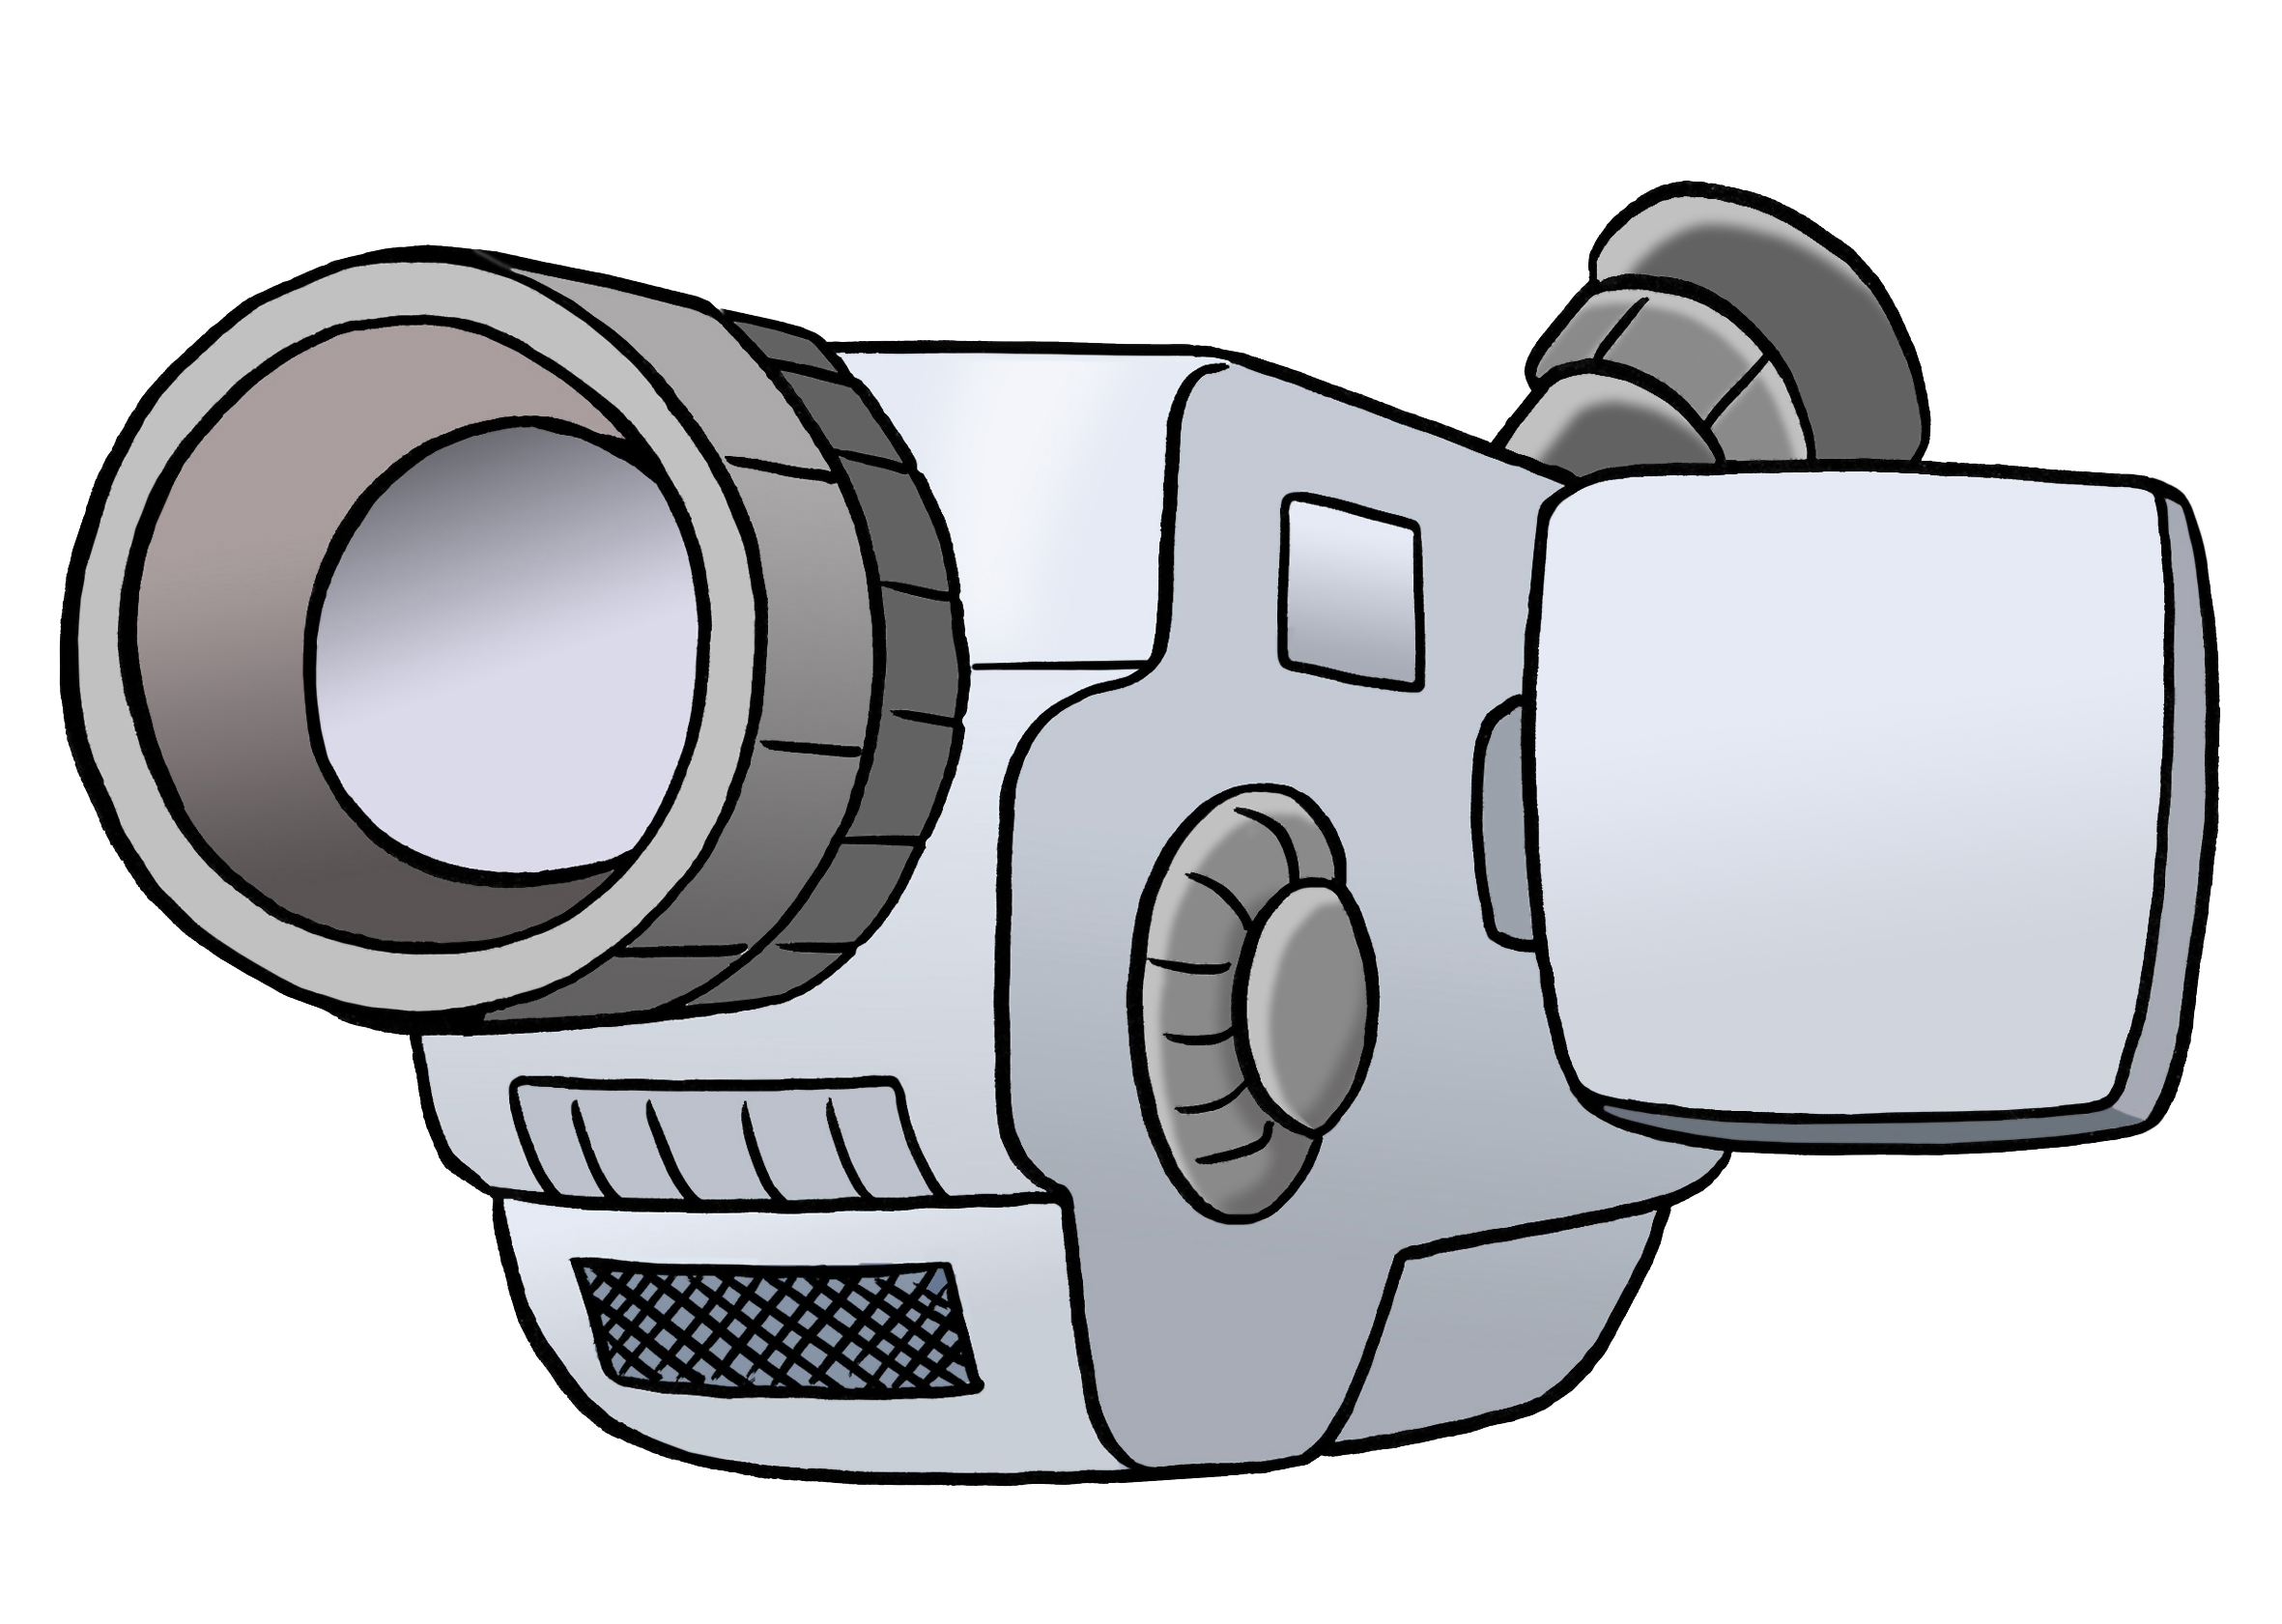 Filmkamera